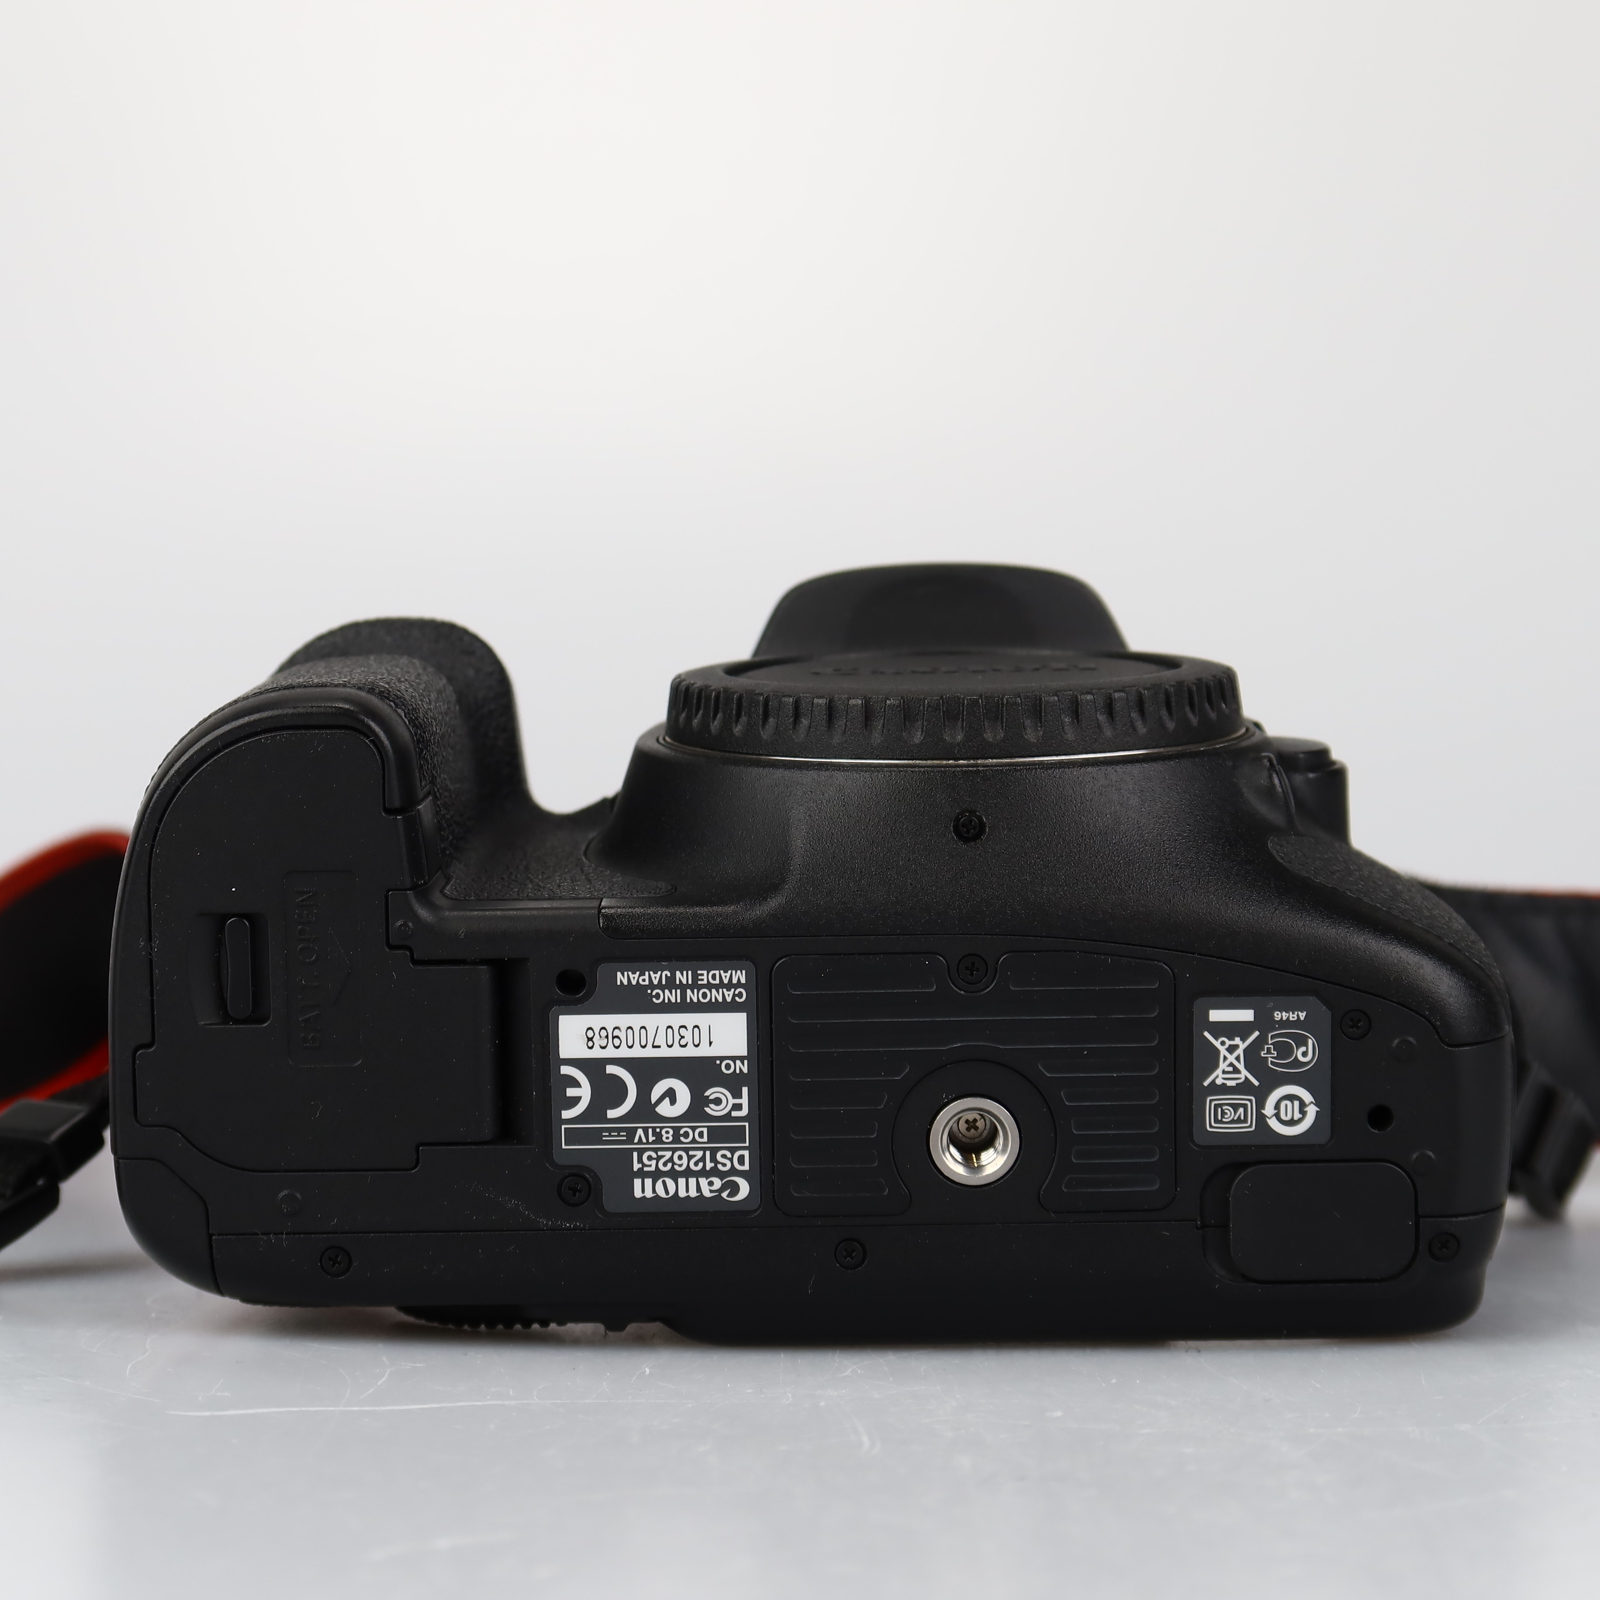 (Myyty) Canon EOS 7D -runko (SC 17105) + BG-E7 akkukahva (käytetty)